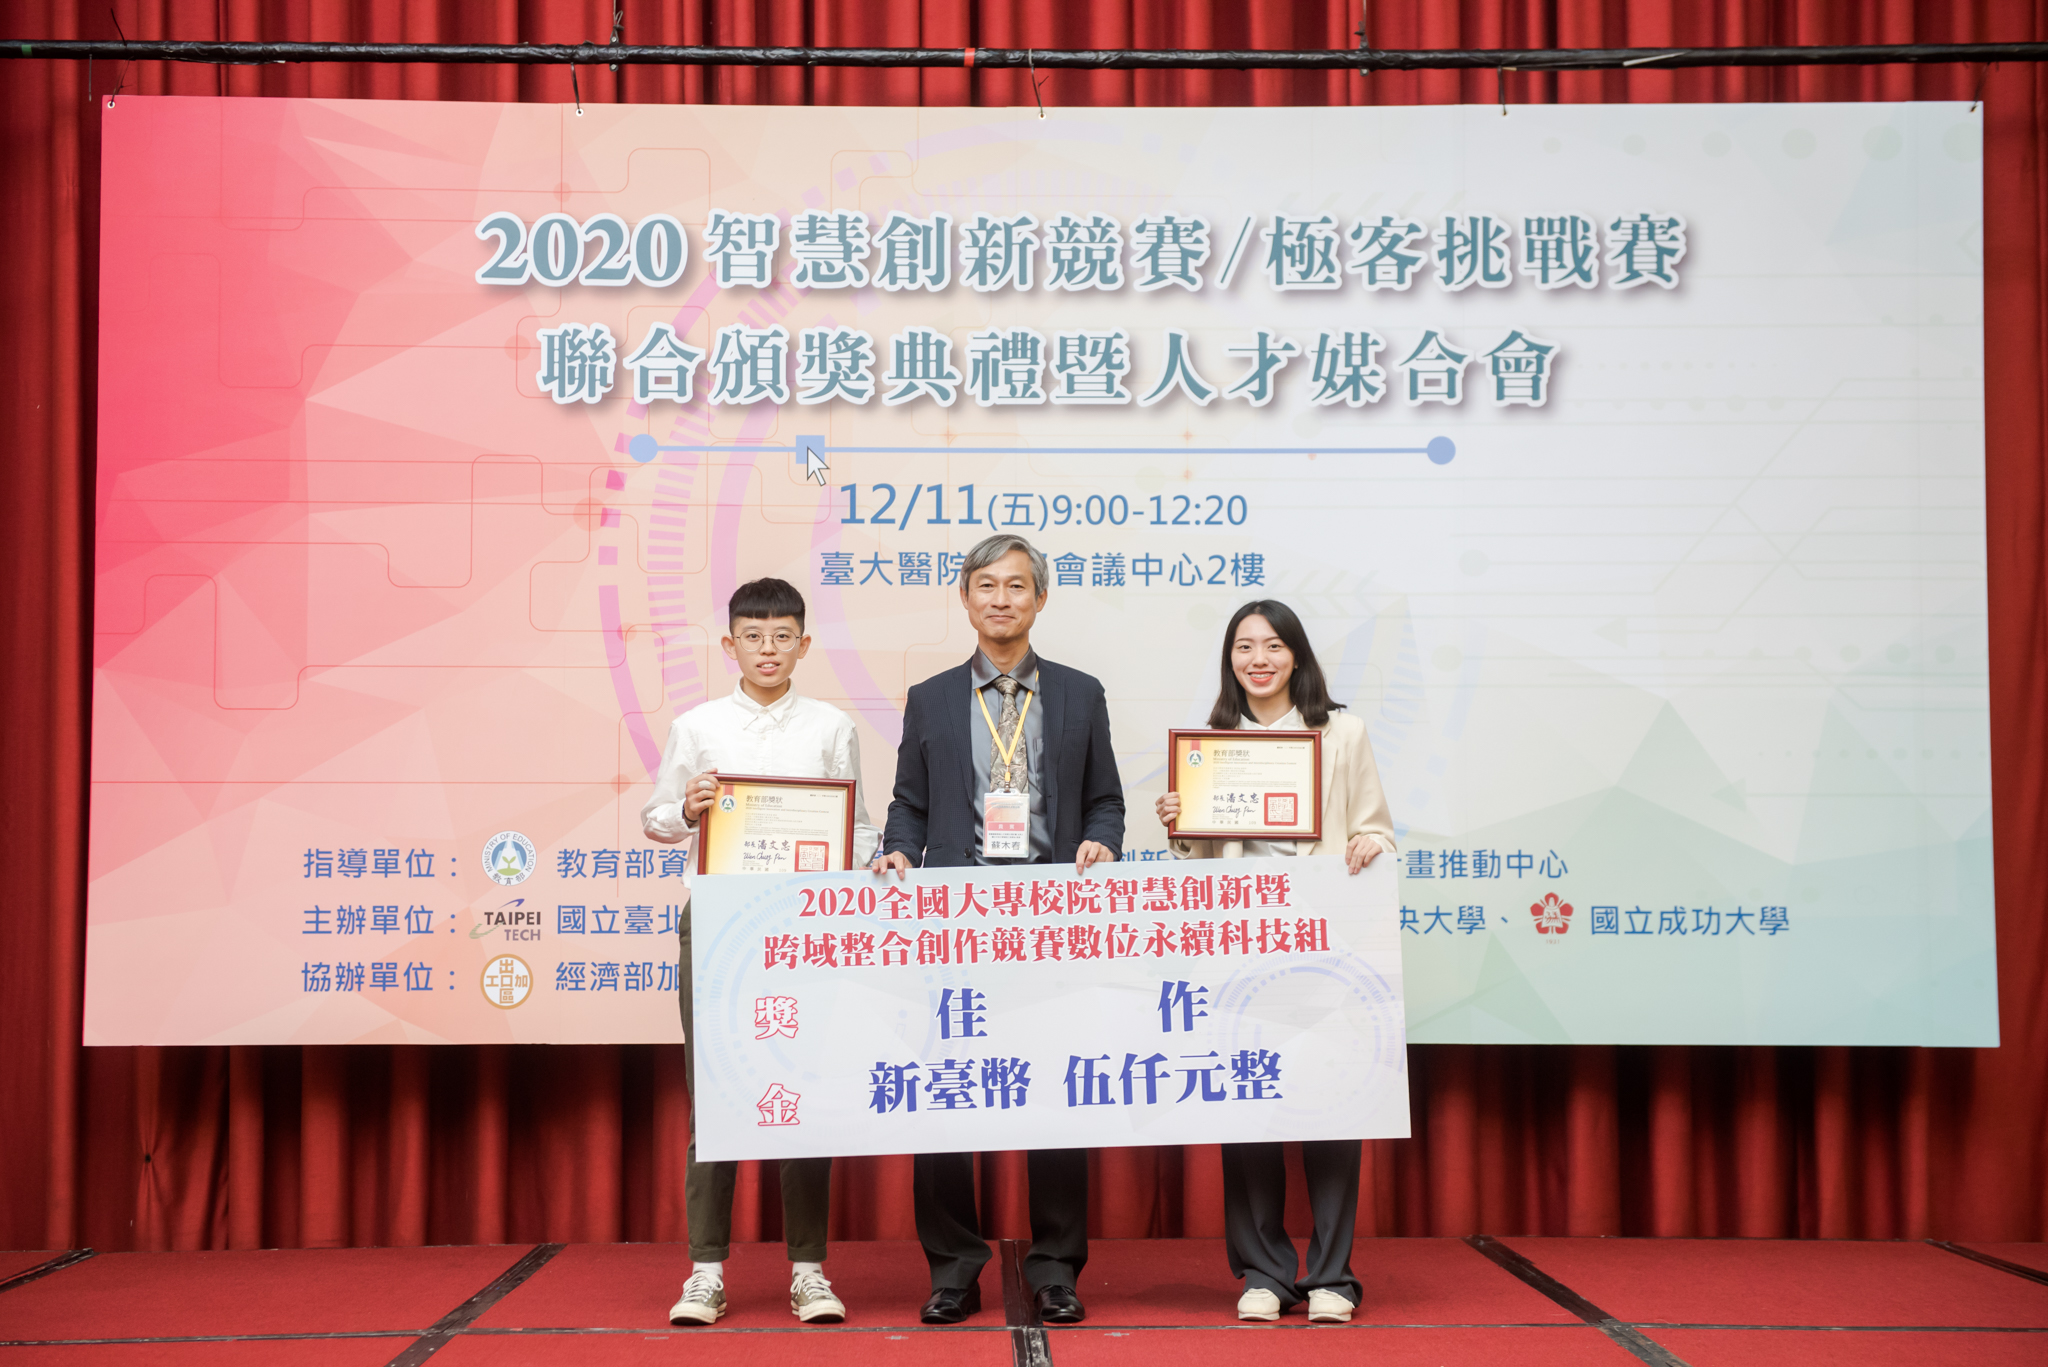 亞大資傳系陸妍諭（左一）、温雅婷（左三），參加「2020全國大專校院智慧創新暨跨領與整合創作」競賽，獲數位永續科技組佳作獎。